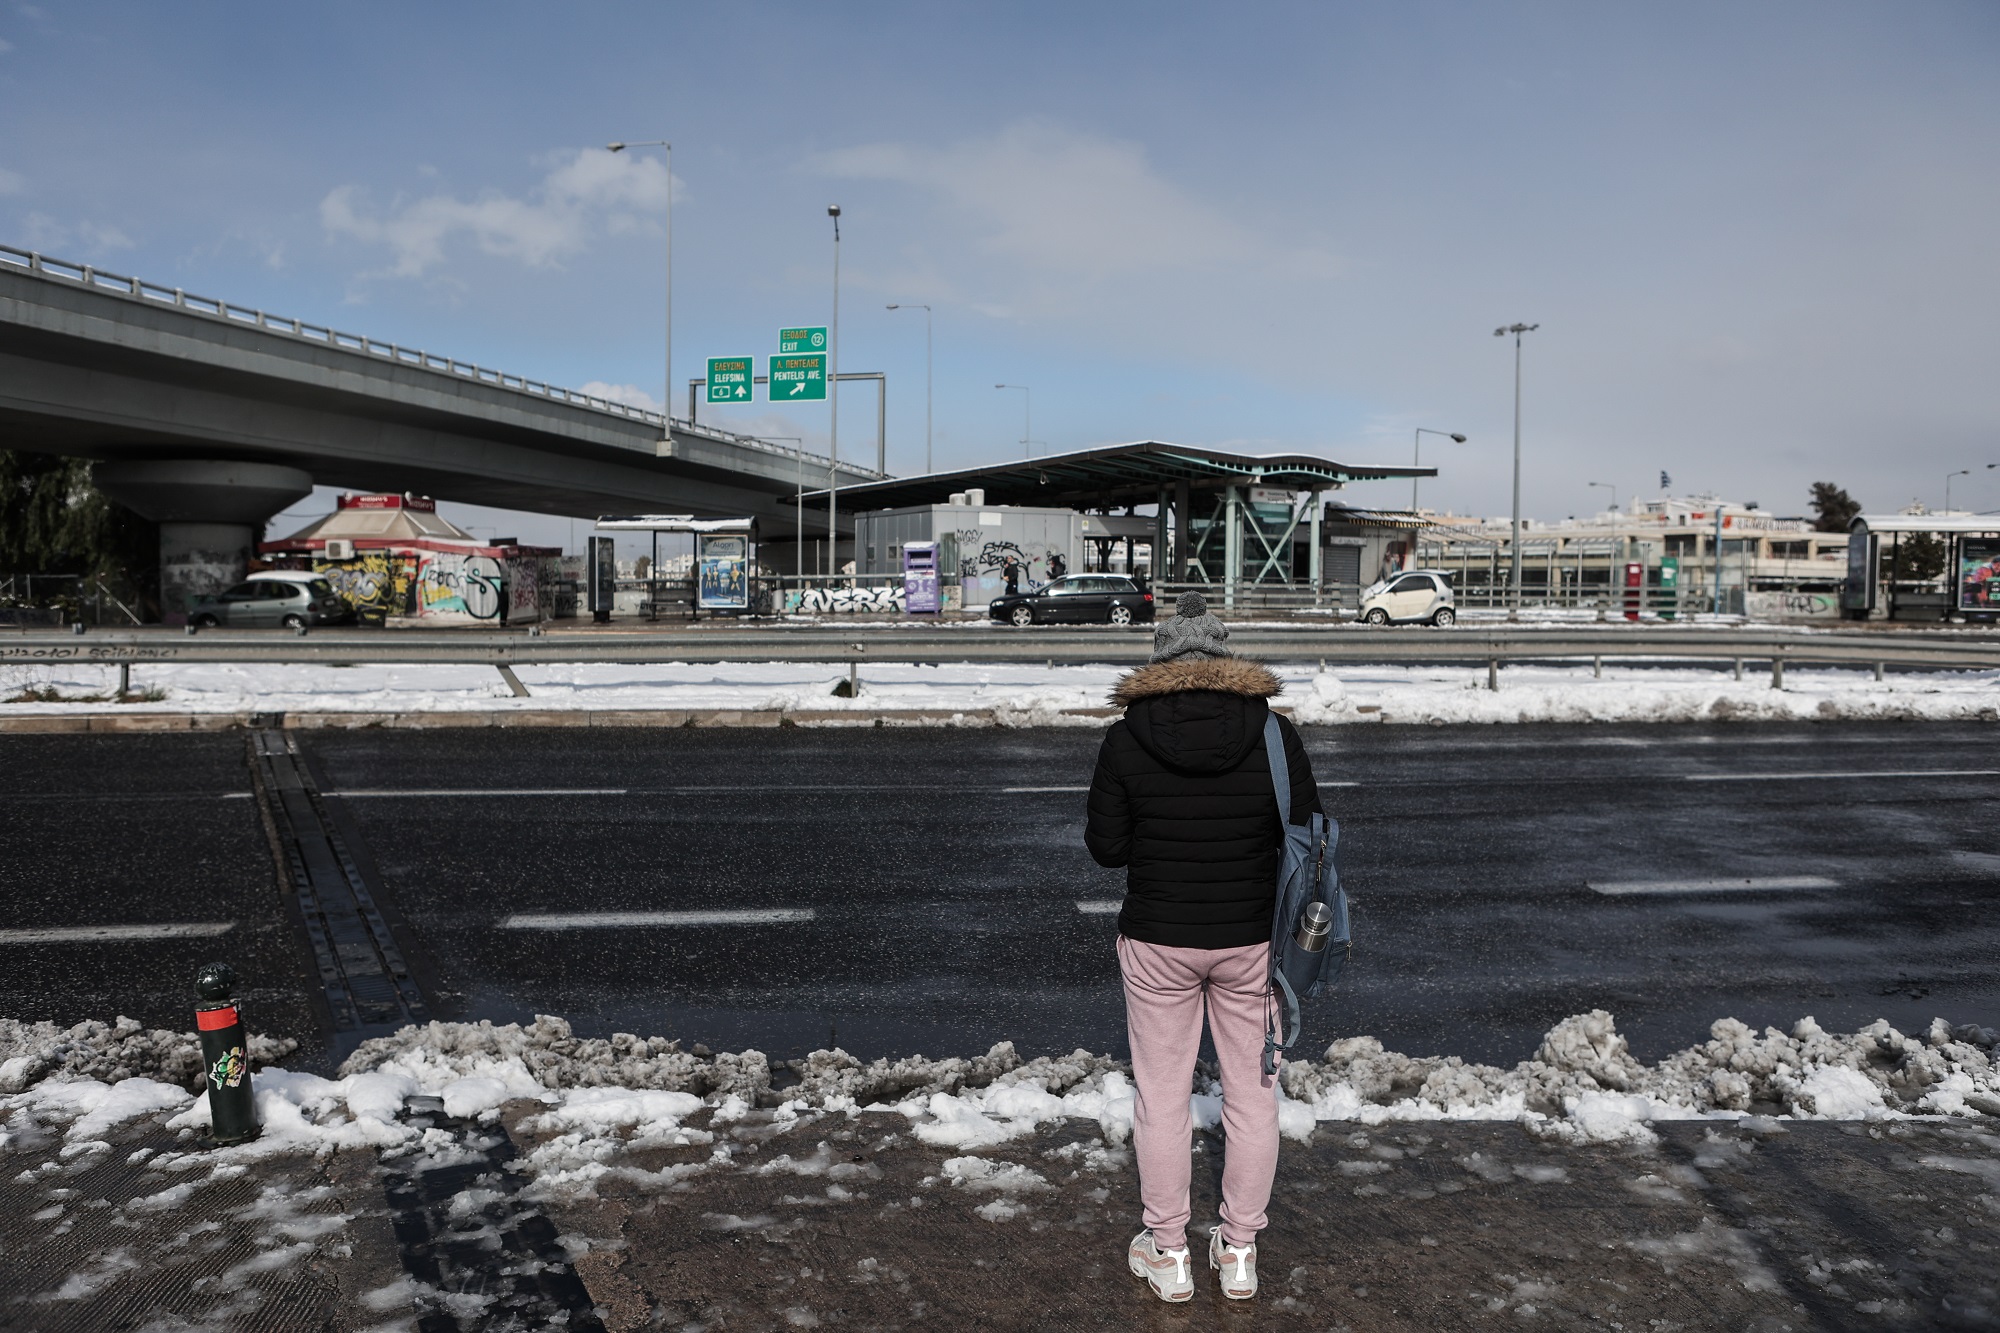 Κακοκαιρία «Μπάρμπαρα»: Καθυστερήσεις λεωφορείων λόγω παγετού – Ποιες γραμμές του ΟΑΣΑ επηρέαζονται